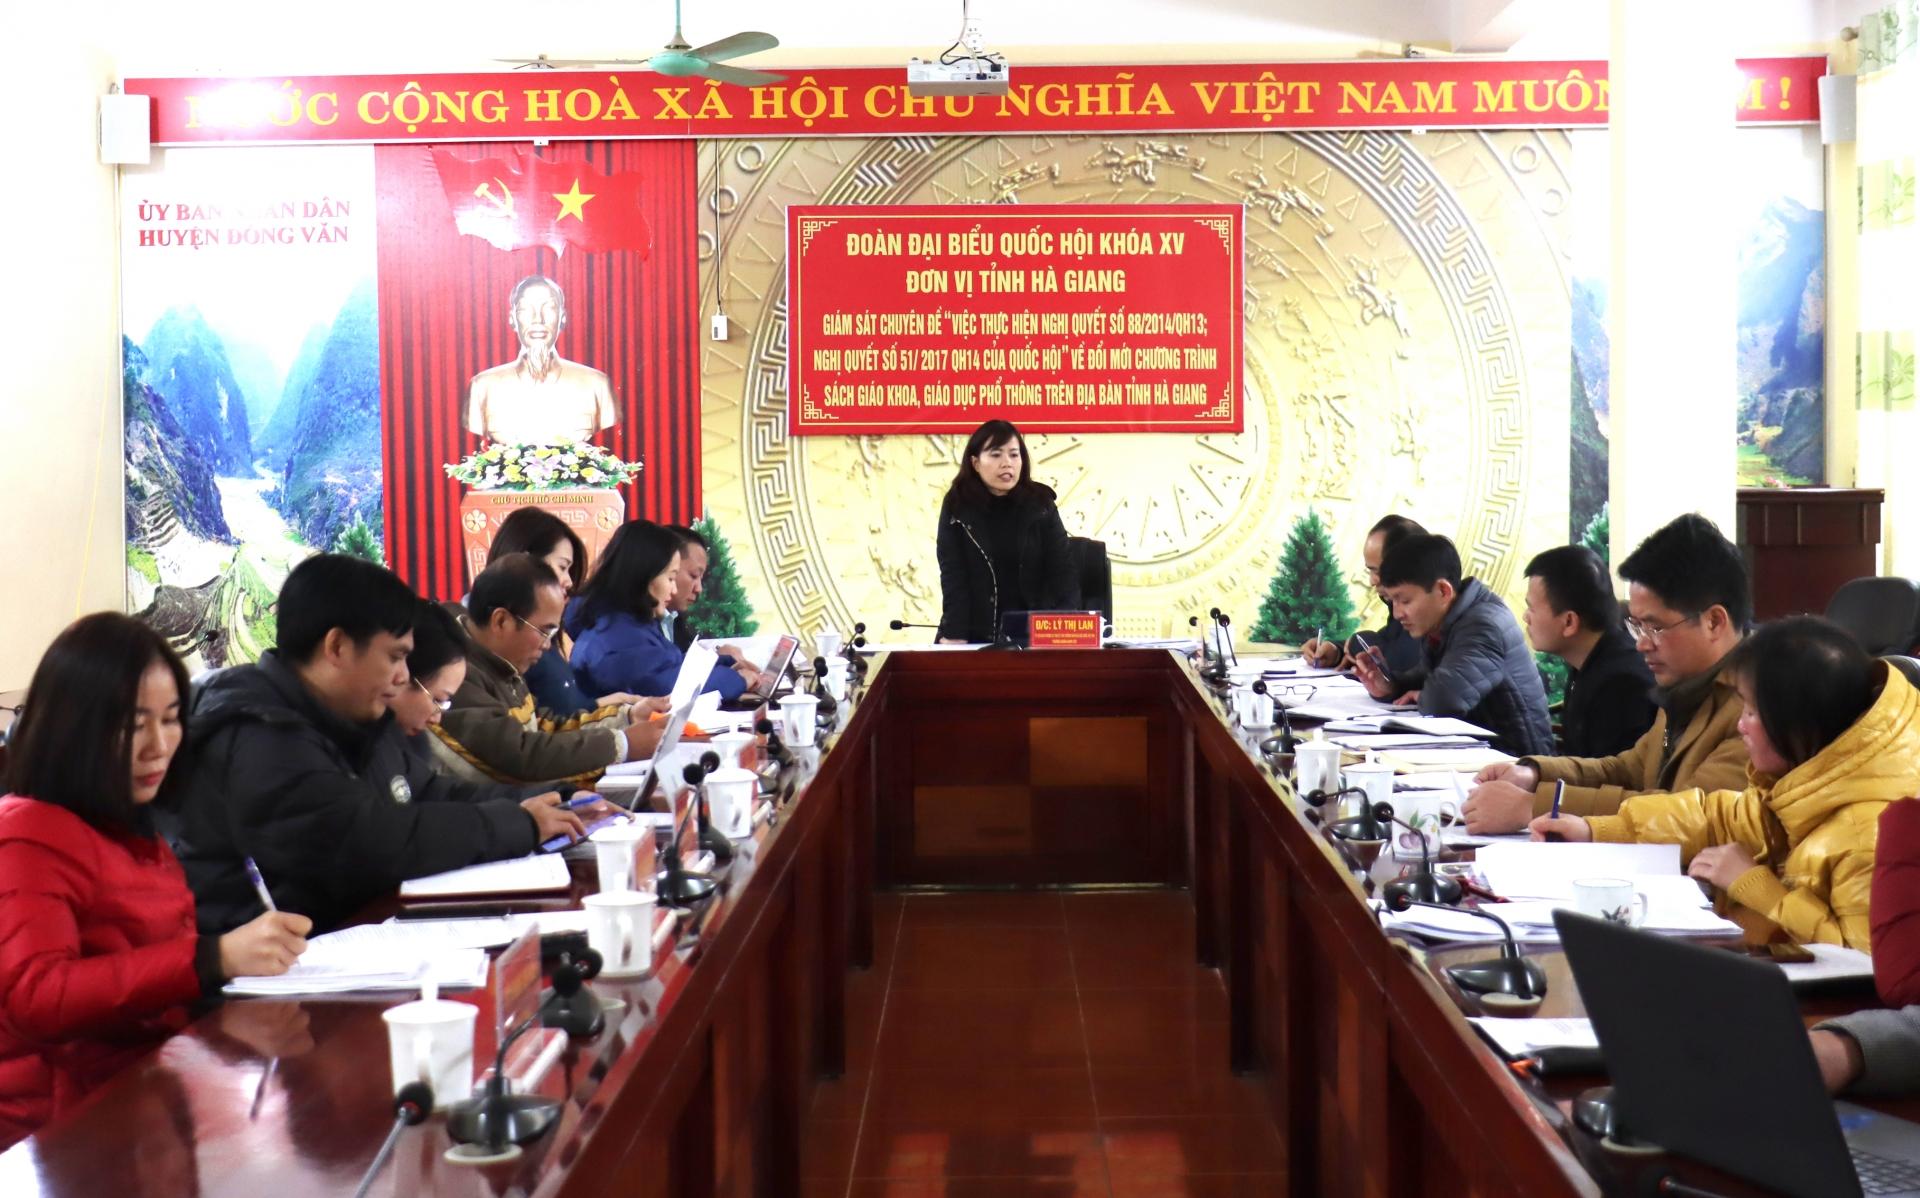 Đồng chí Lý Thị Lan kết luận buổi làm việc với lãnh đạo UBND huyện Đồng Văn.